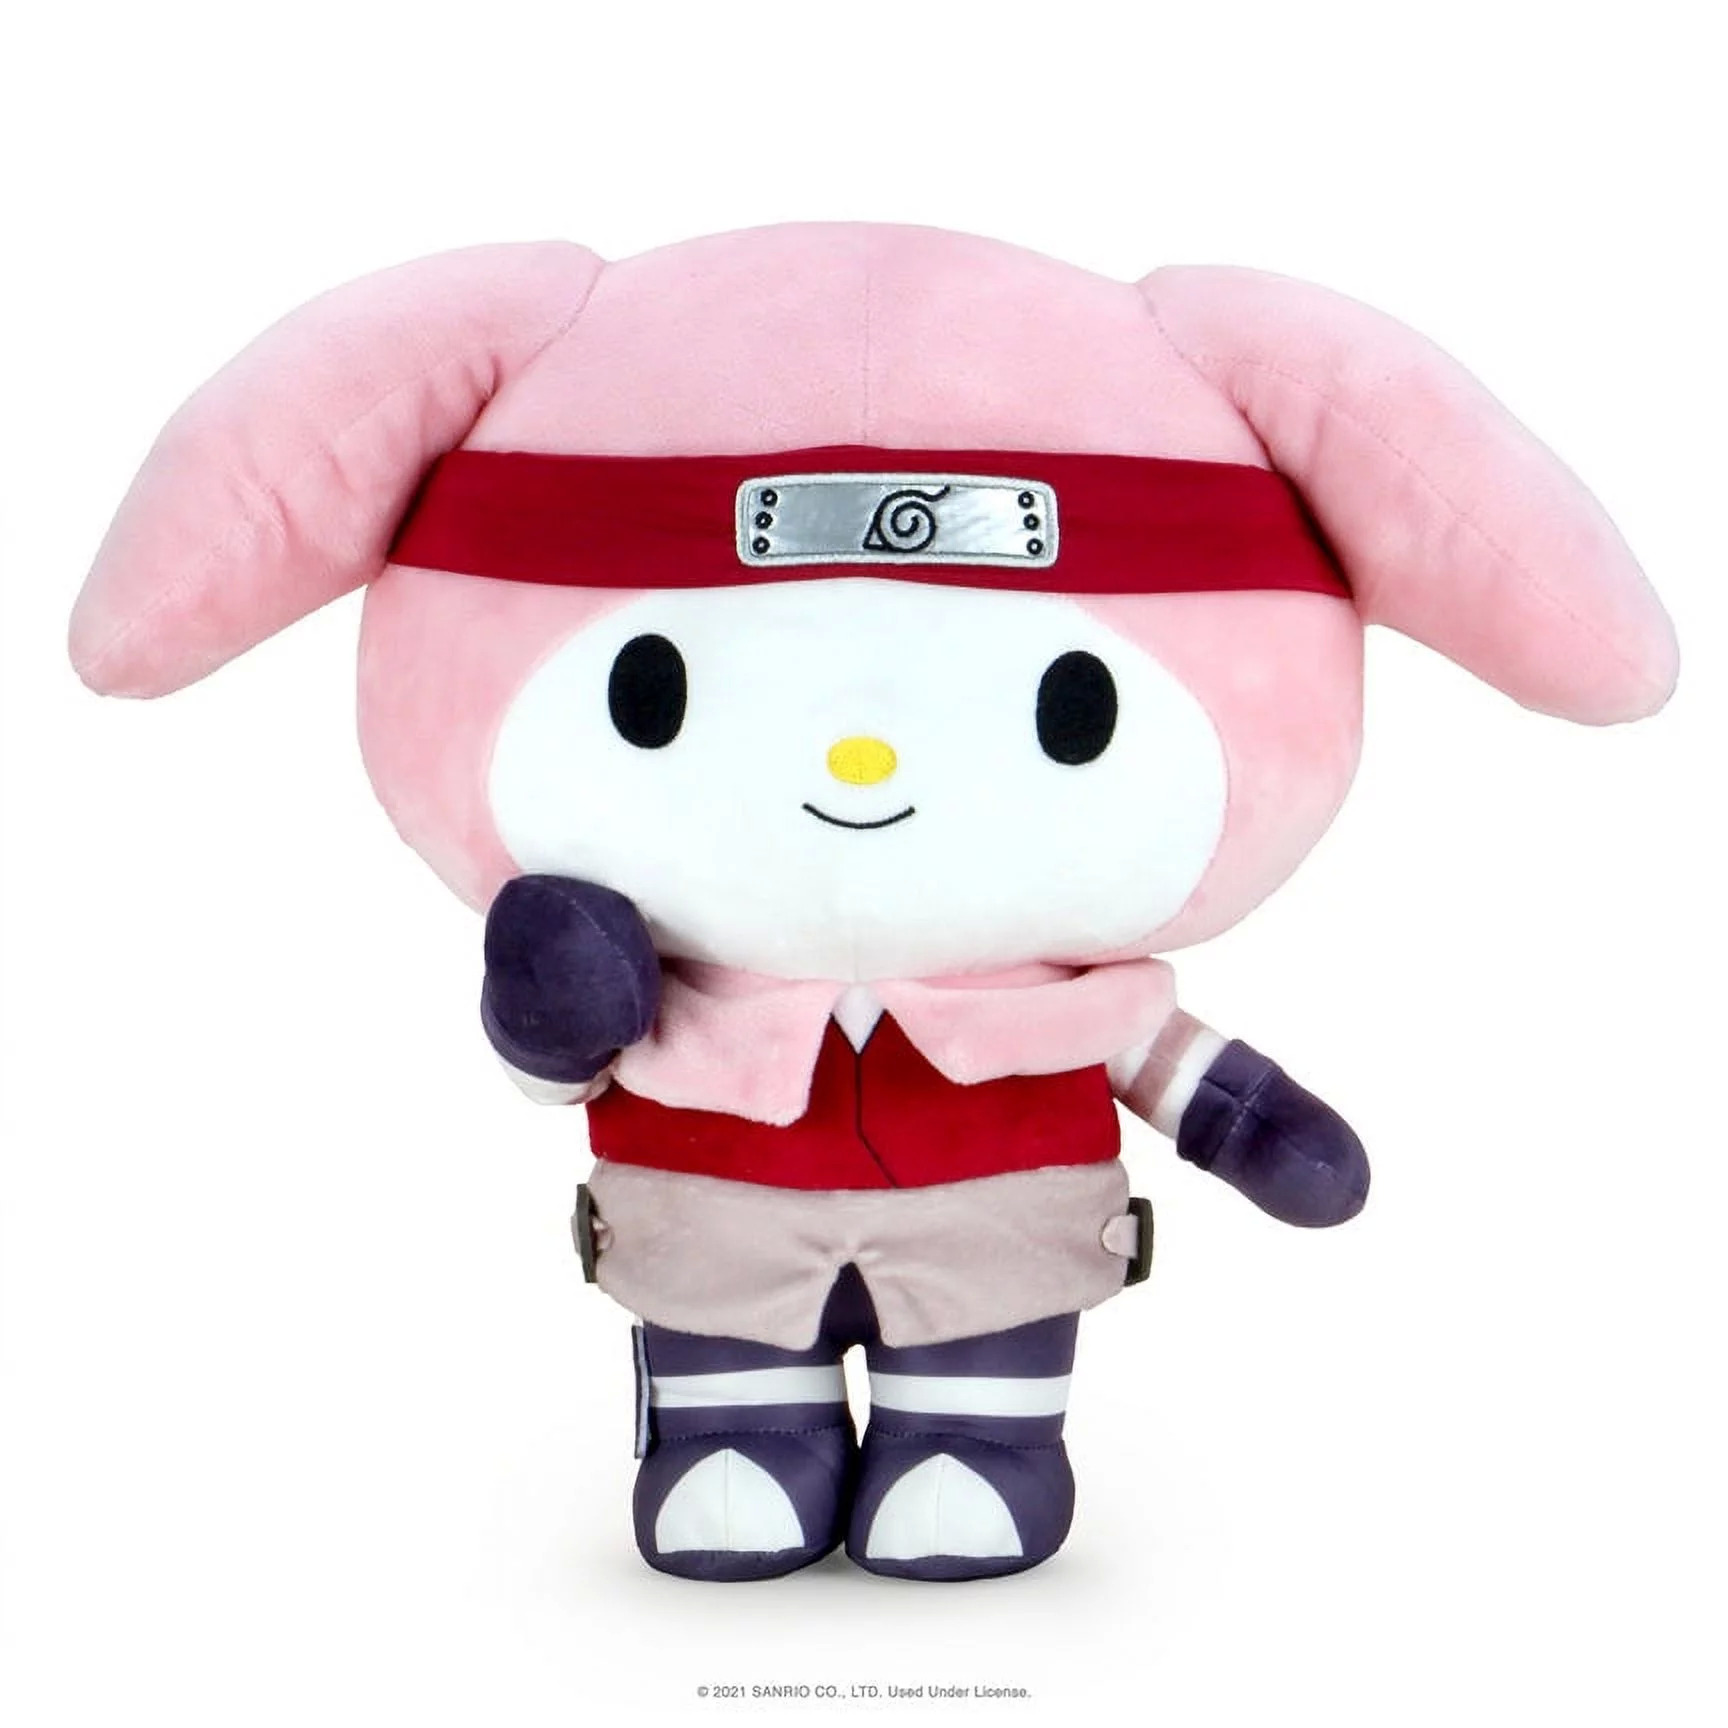 13" NECA Naruto x Hello Kitty My Melody as Sakura Plush Toy $18.50 + Free Shipping